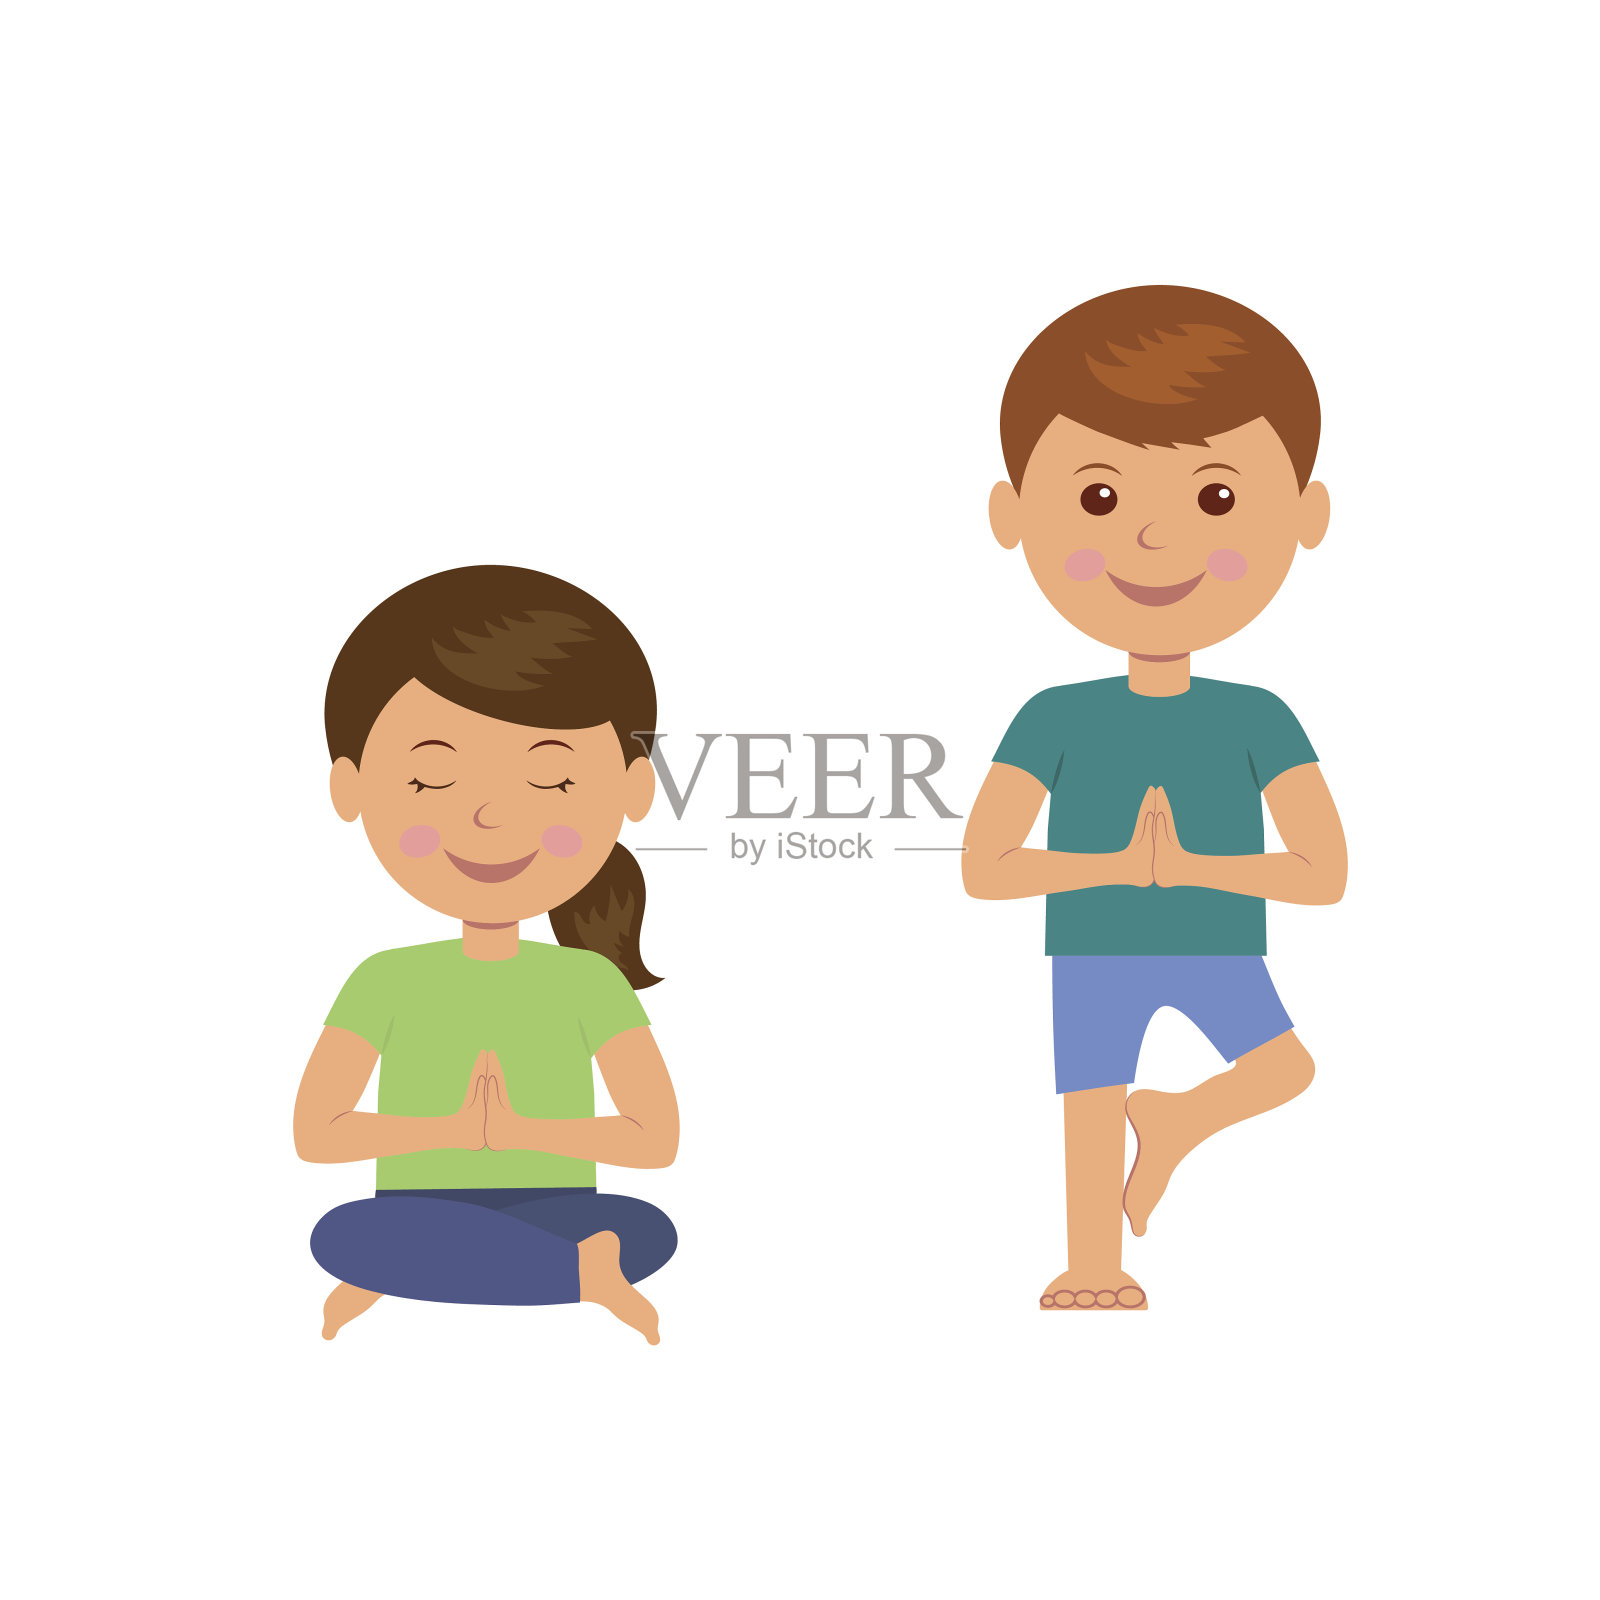 瑜伽的孩子。儿童体操和健康的生活方式。插画图片素材